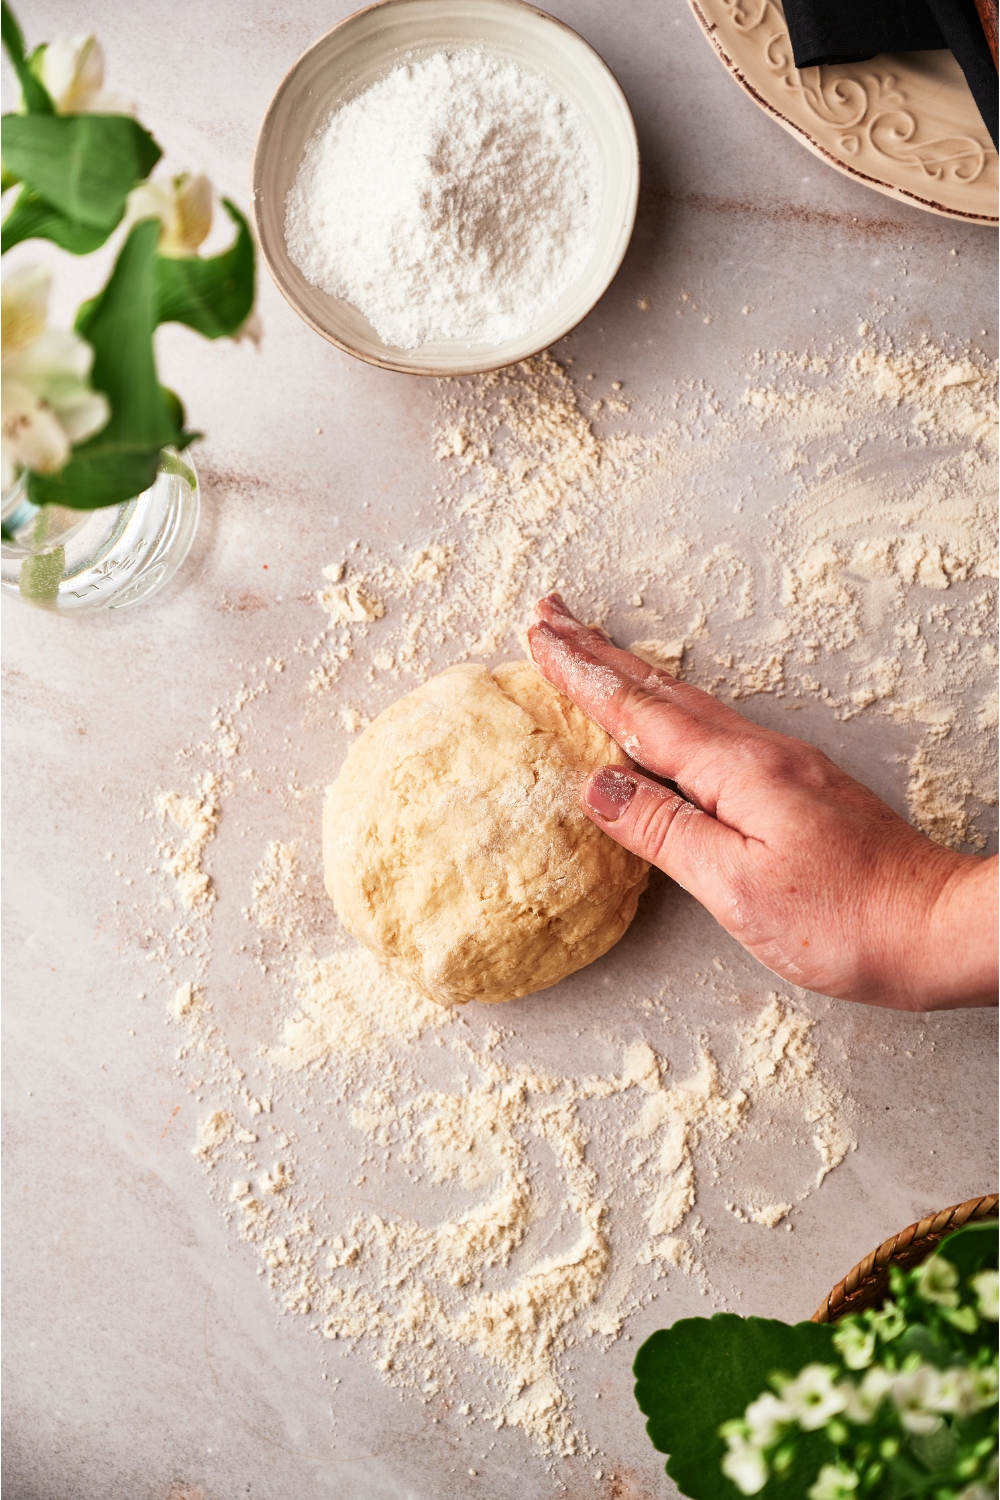 A hand on a ball of dough on top of flour on a table.